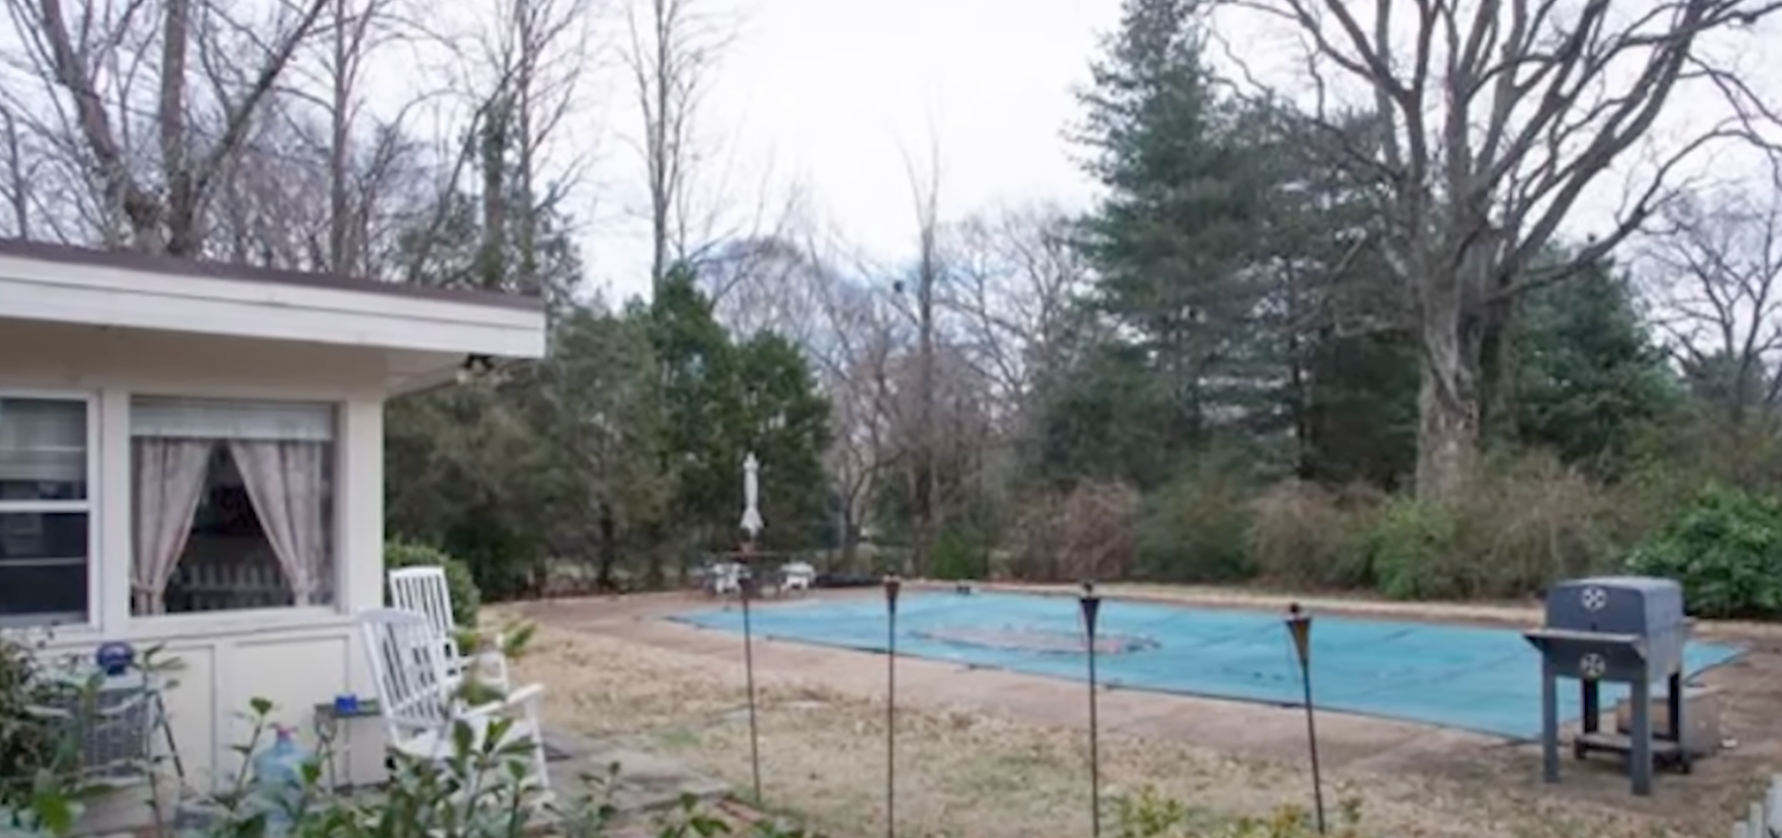 Der Swimmingpool im Haus der Familie von Reese Witherspoon und Jim Toth in Nashville | Quelle: YouTube/@FamousEntertainment